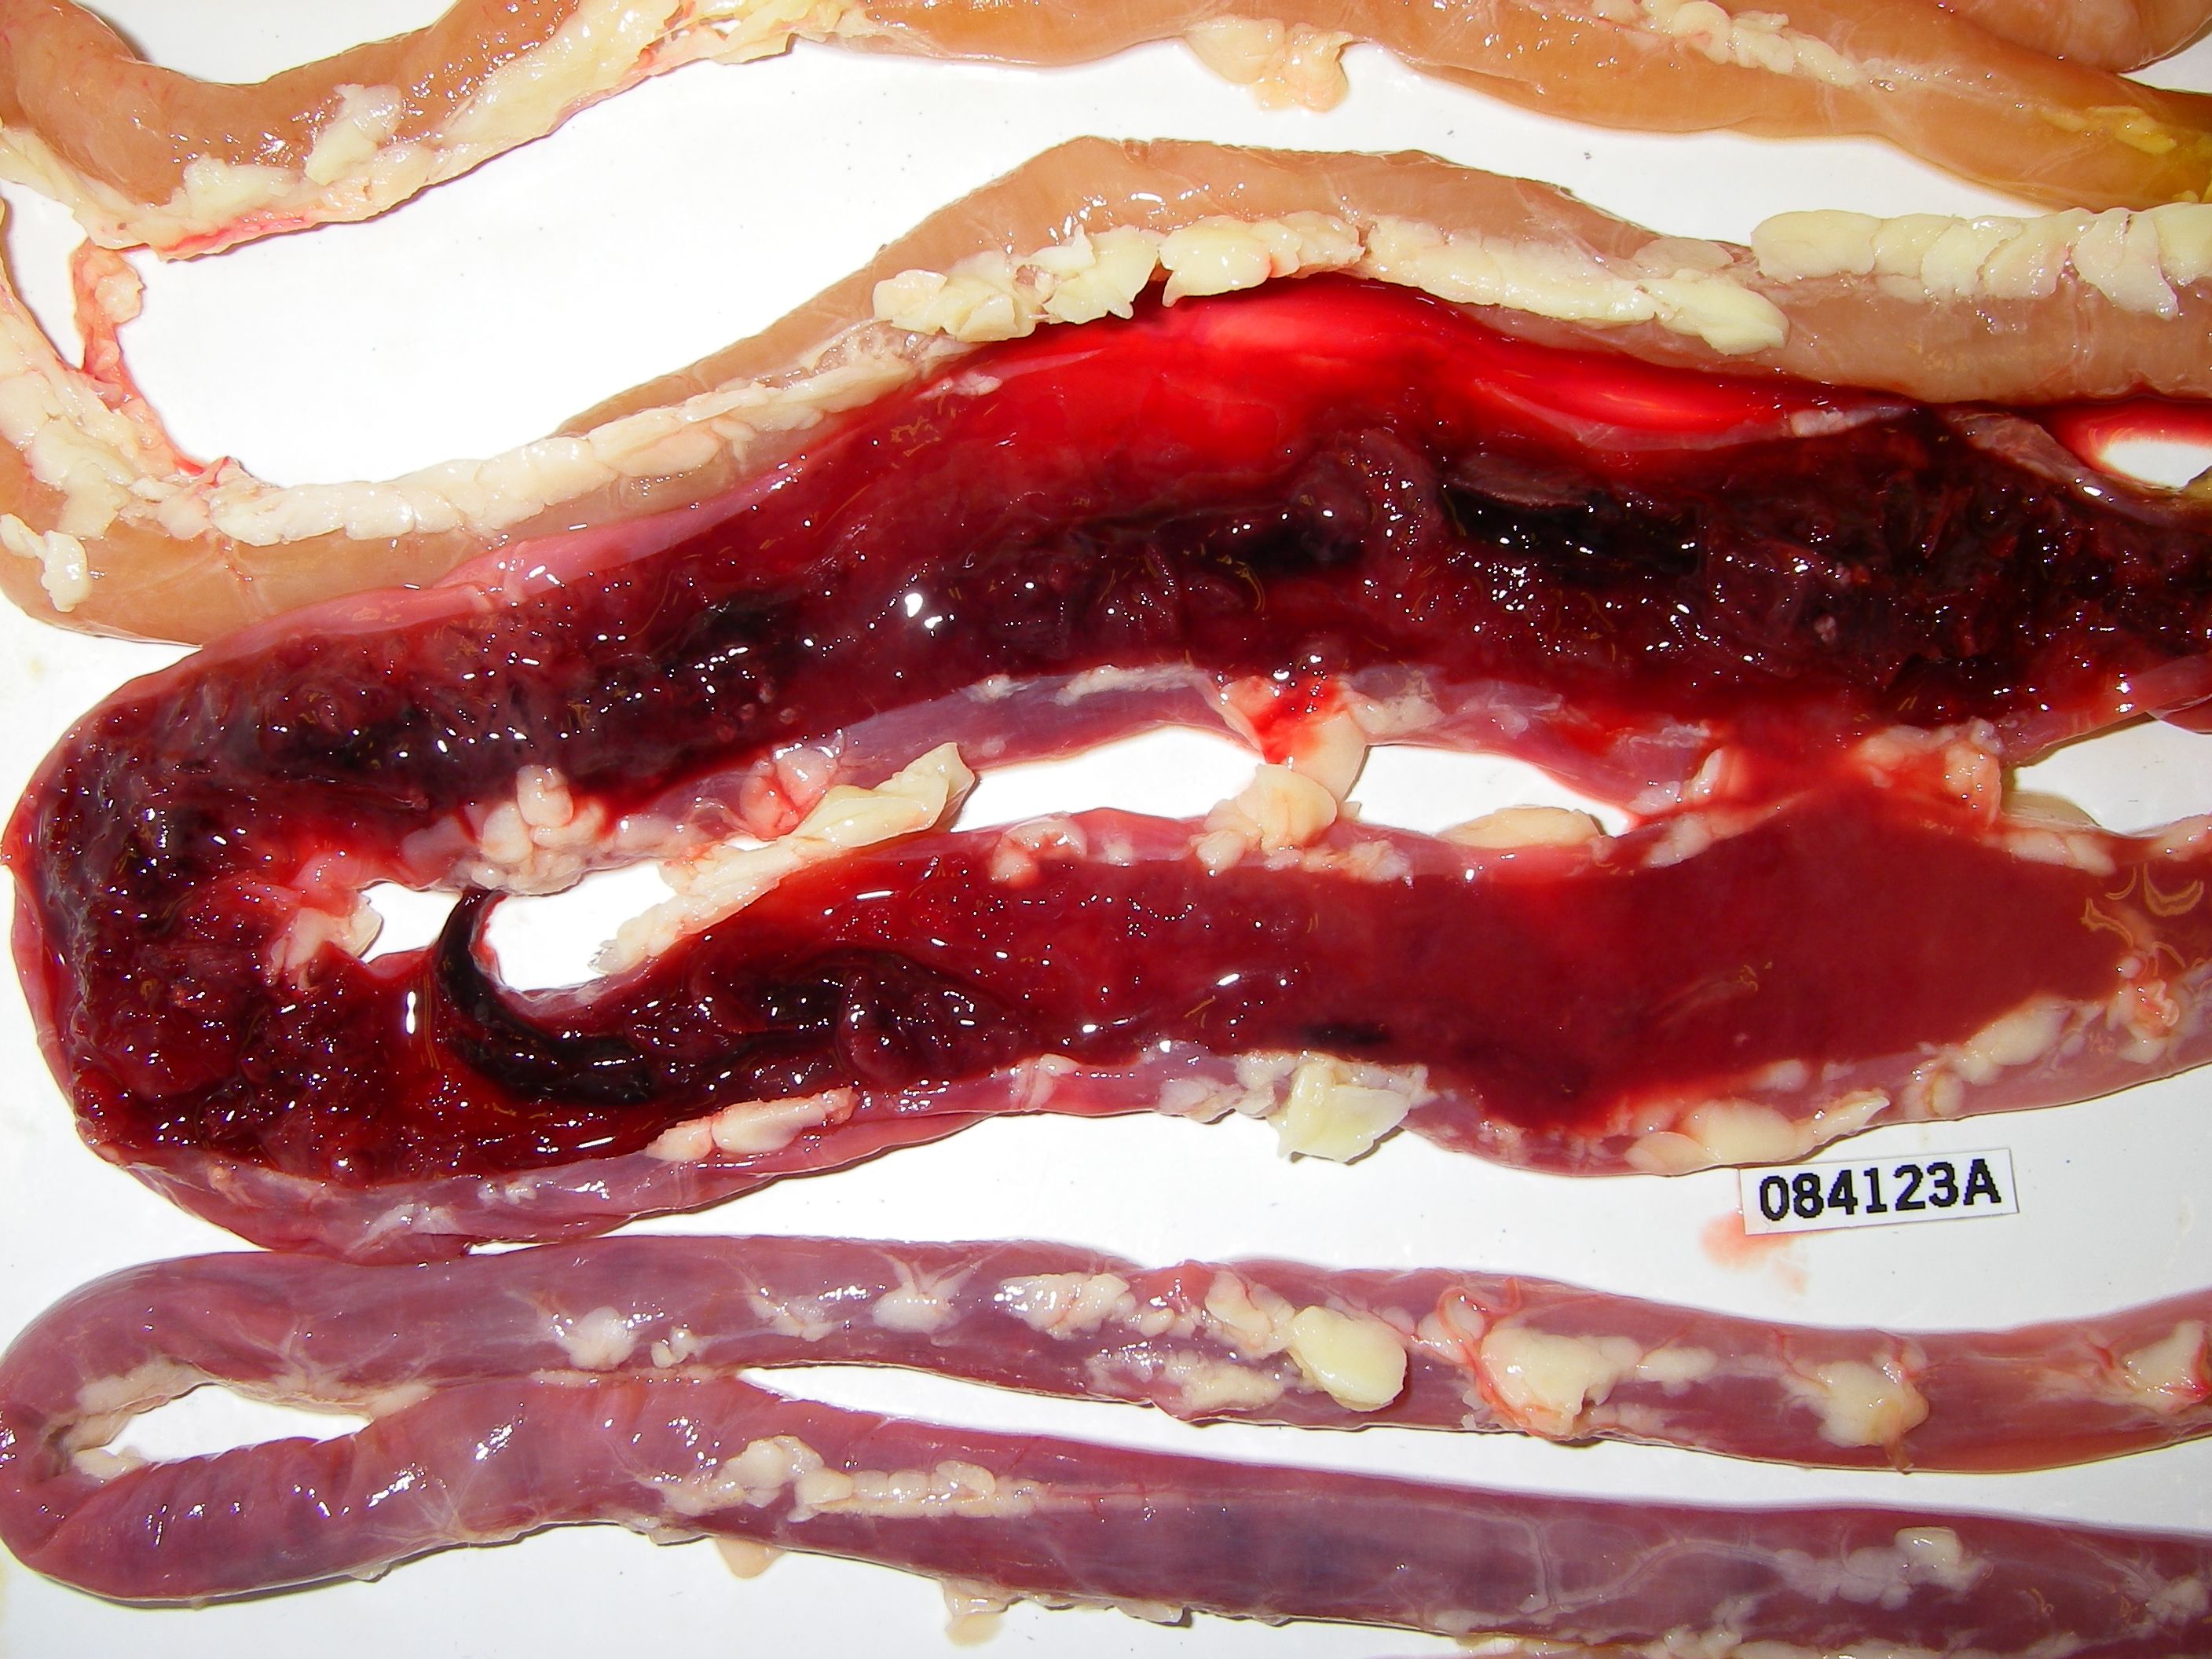 Sphaeridiotrema globulus hemorrhage Snow Goose intestine